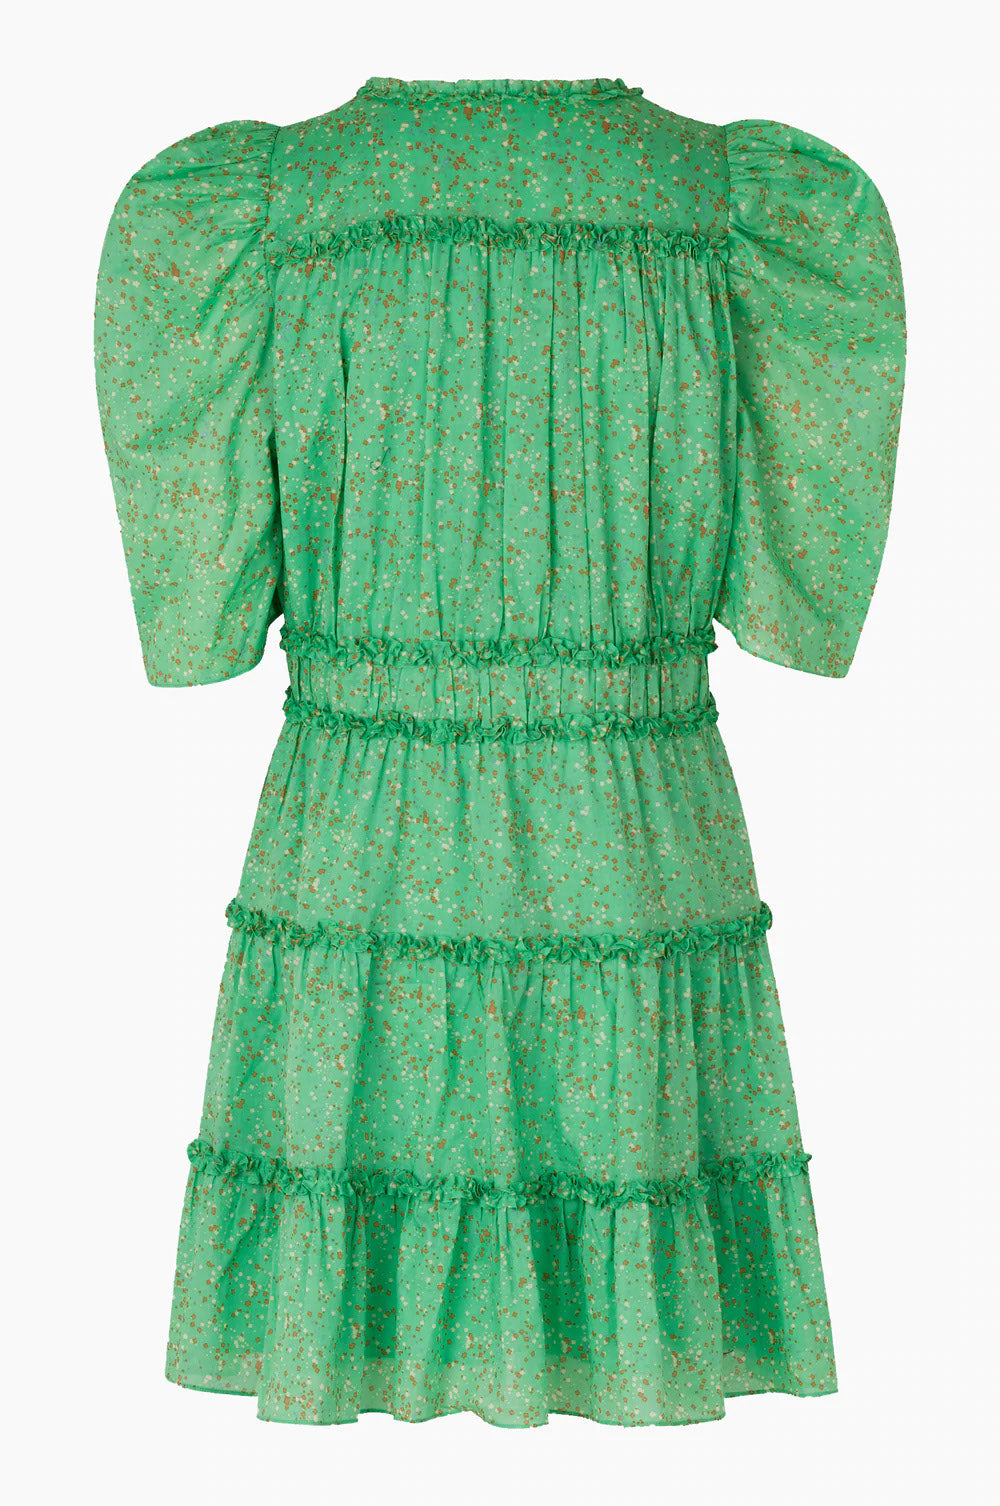 Jodis Dress - Absinthe Green